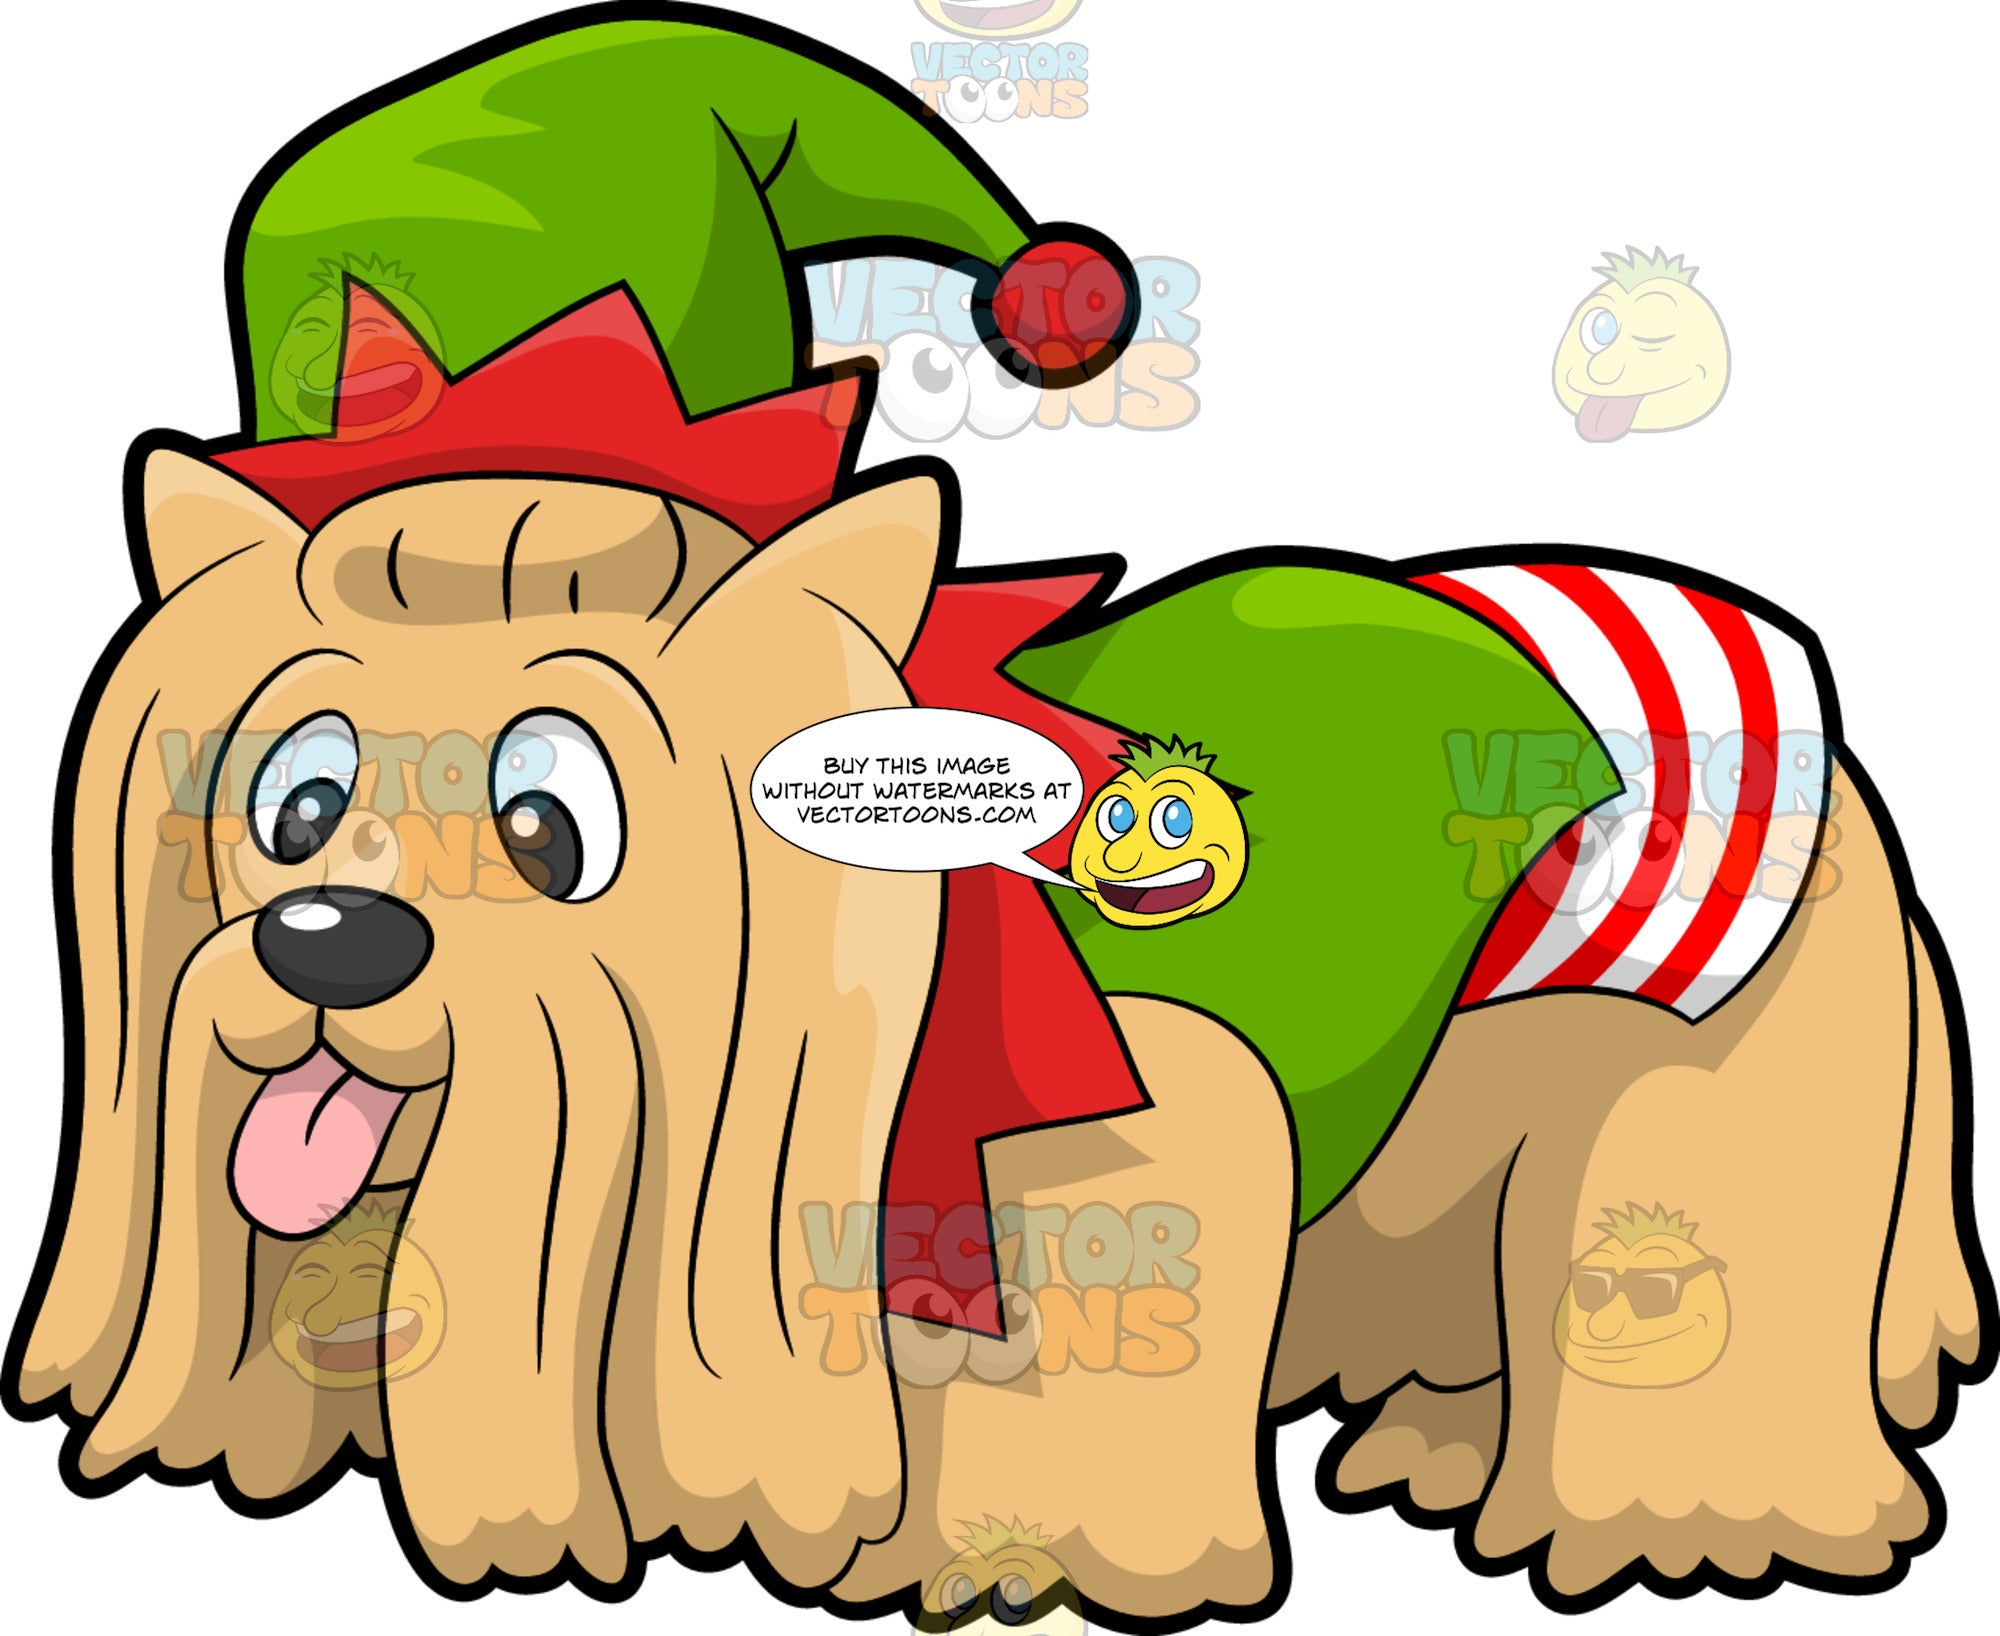 dog in elf costume